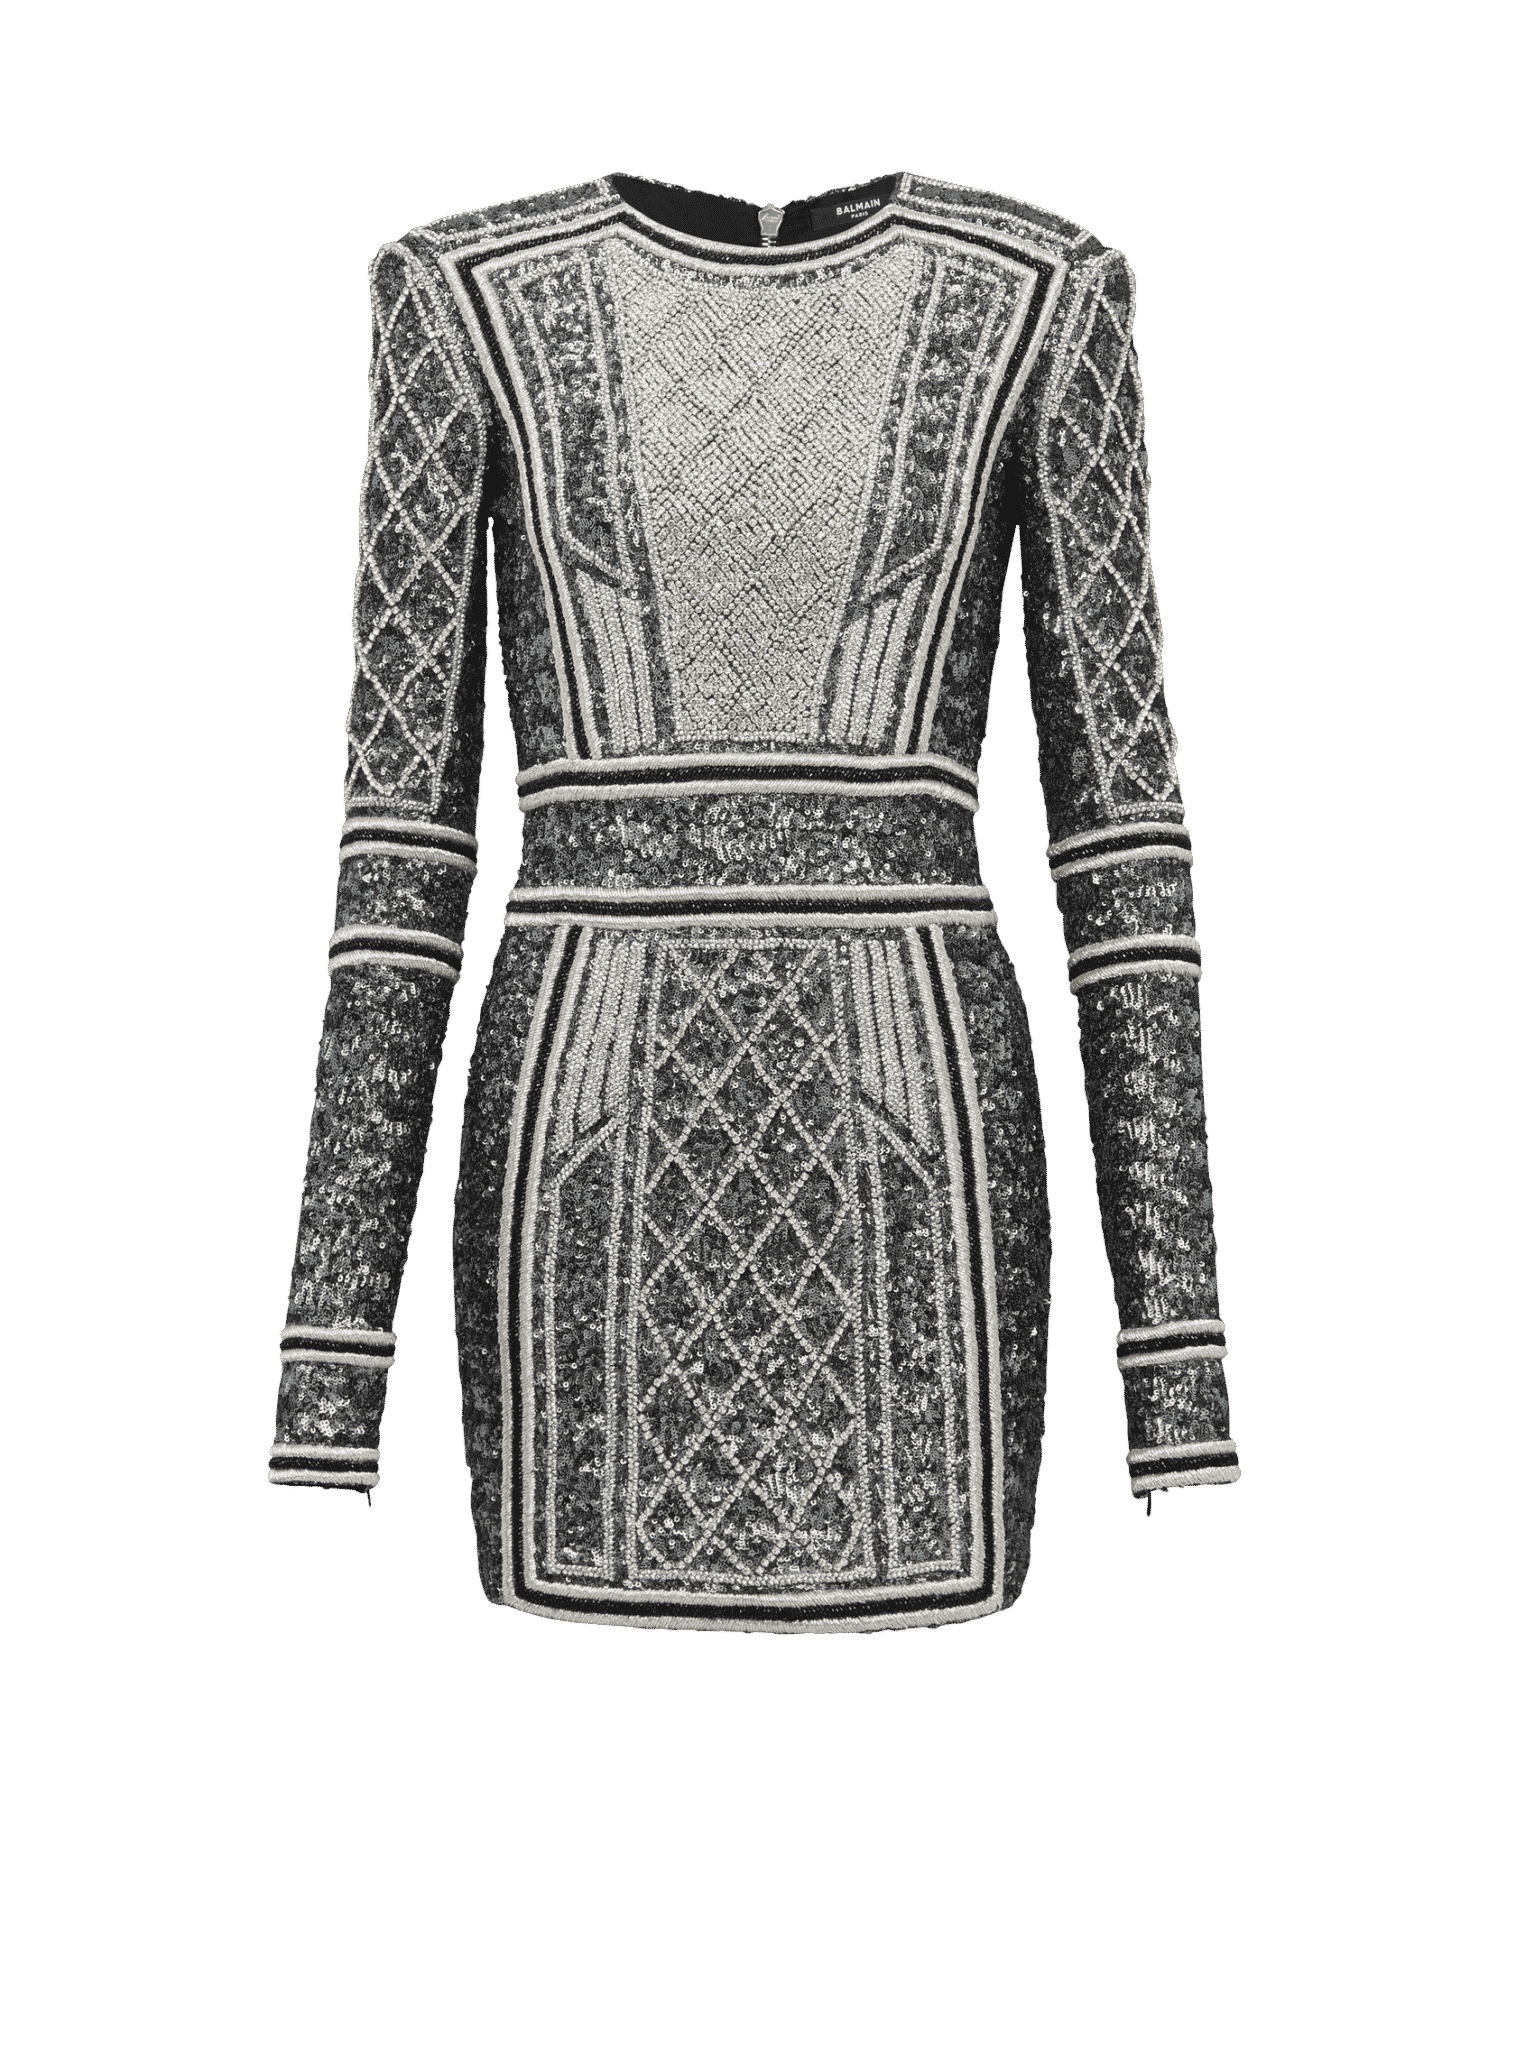 Balmain Short Embroidered Dress 1516x2048 